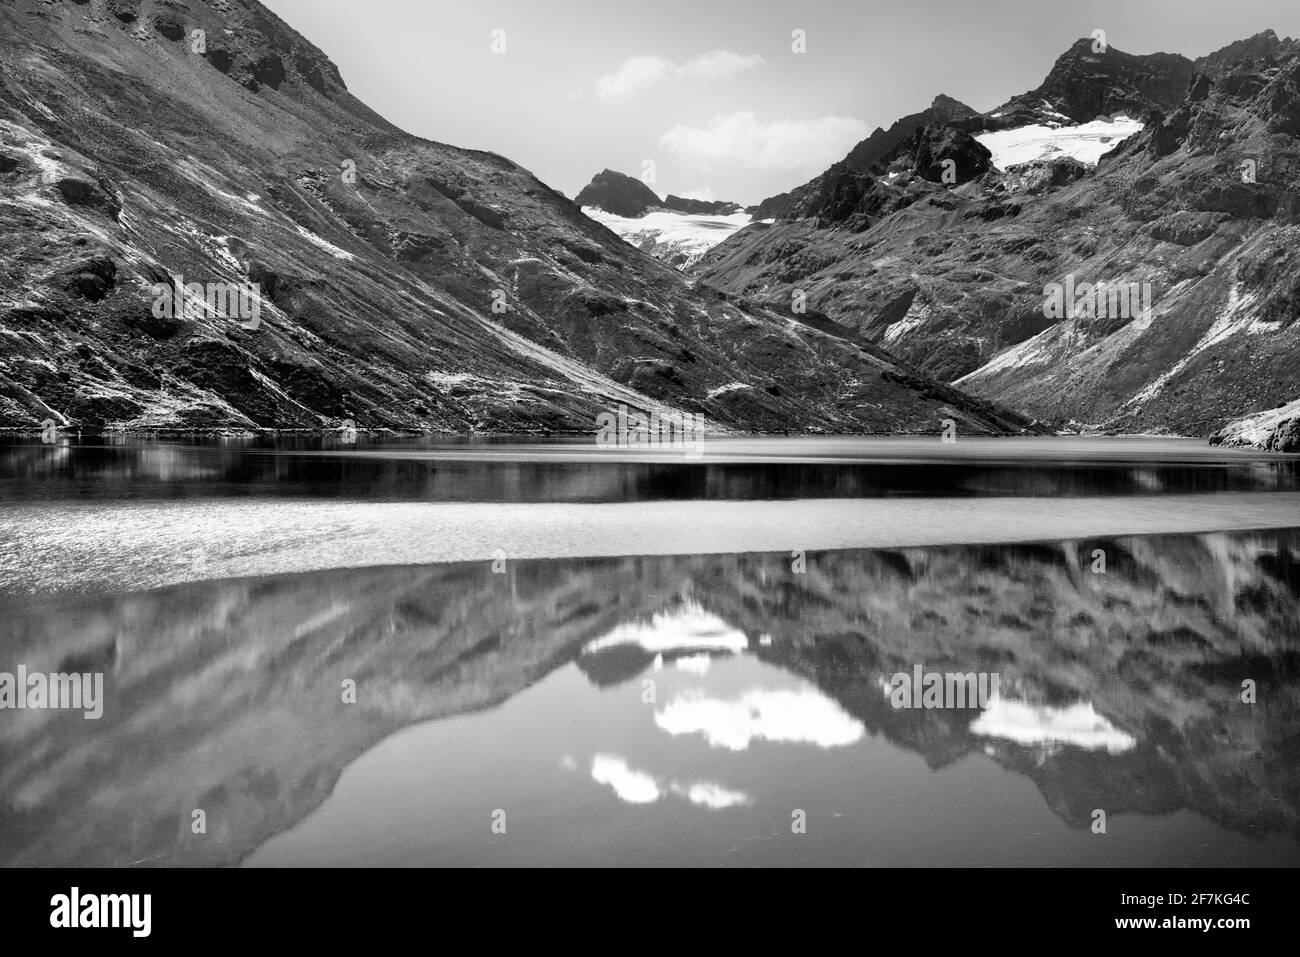 Malerische Alpenlandschaft mit See, Bergen und Gletscher. Reflexionen in einem ruhigen Bergsee. Schwarzweiß-, Schwarzweiß- und Schwarzweißfotografie. Stockfoto